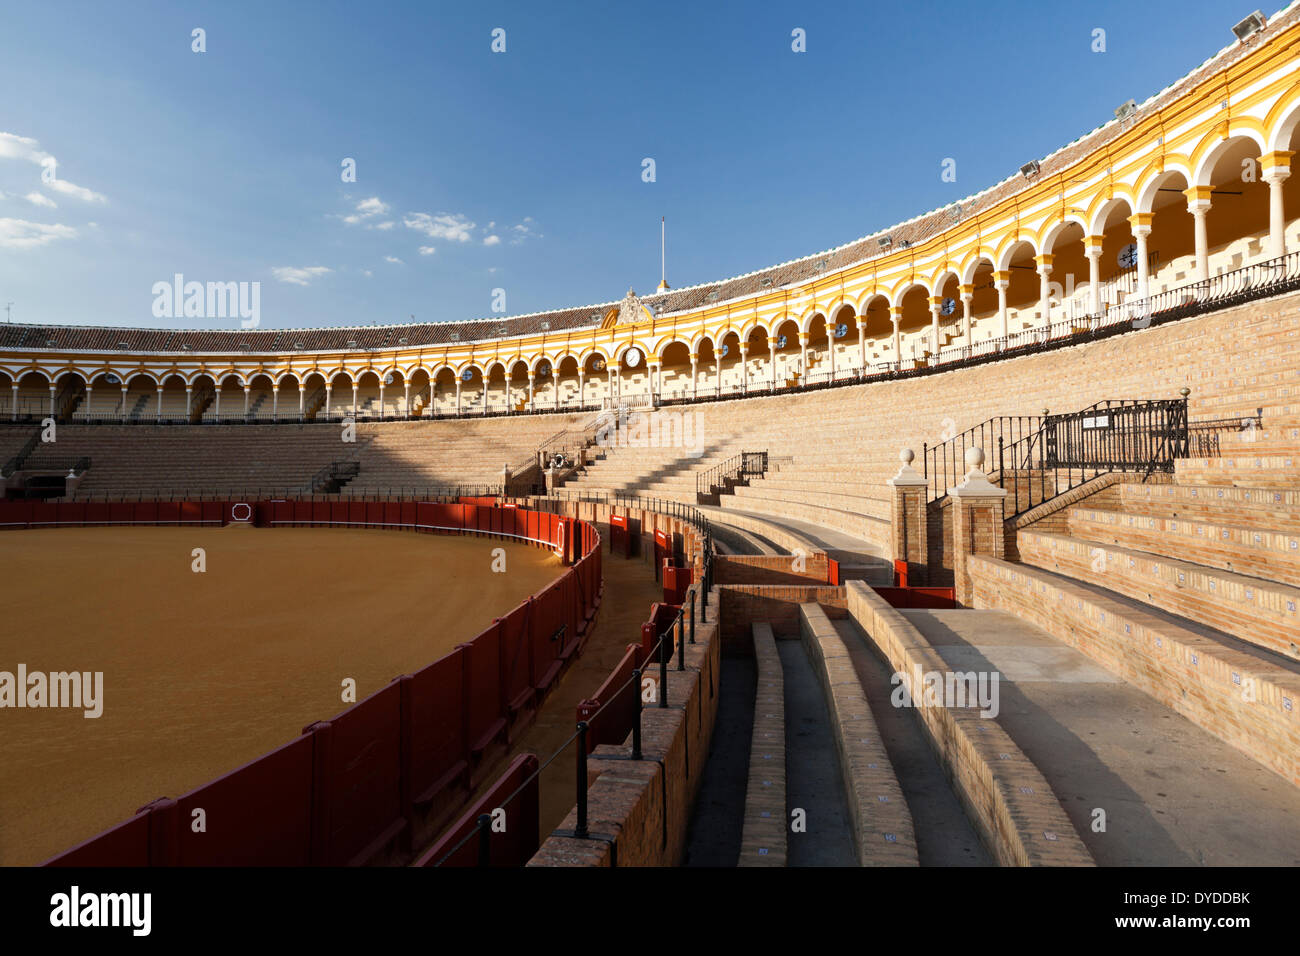 Inside the Plaza de toros de la Real Maestranza in Seville. Stock Photo